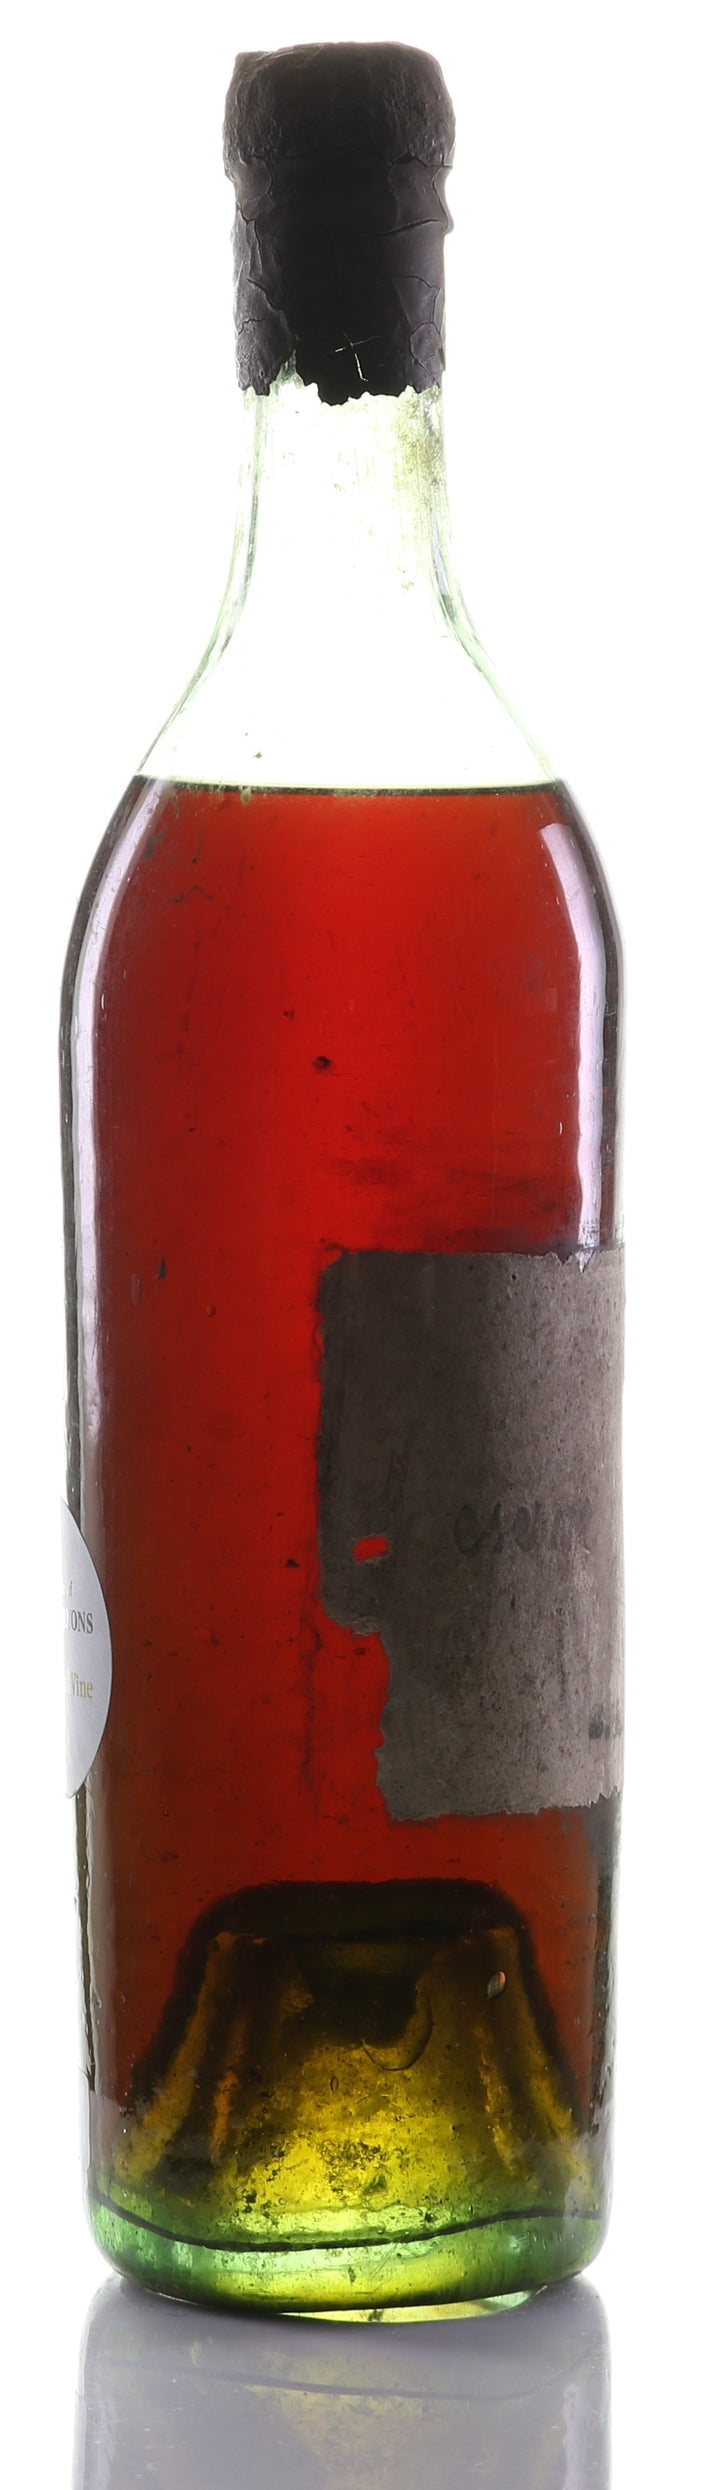 Cognac Vintage 1811 Croizet Réserve Privee - legendaryvintages